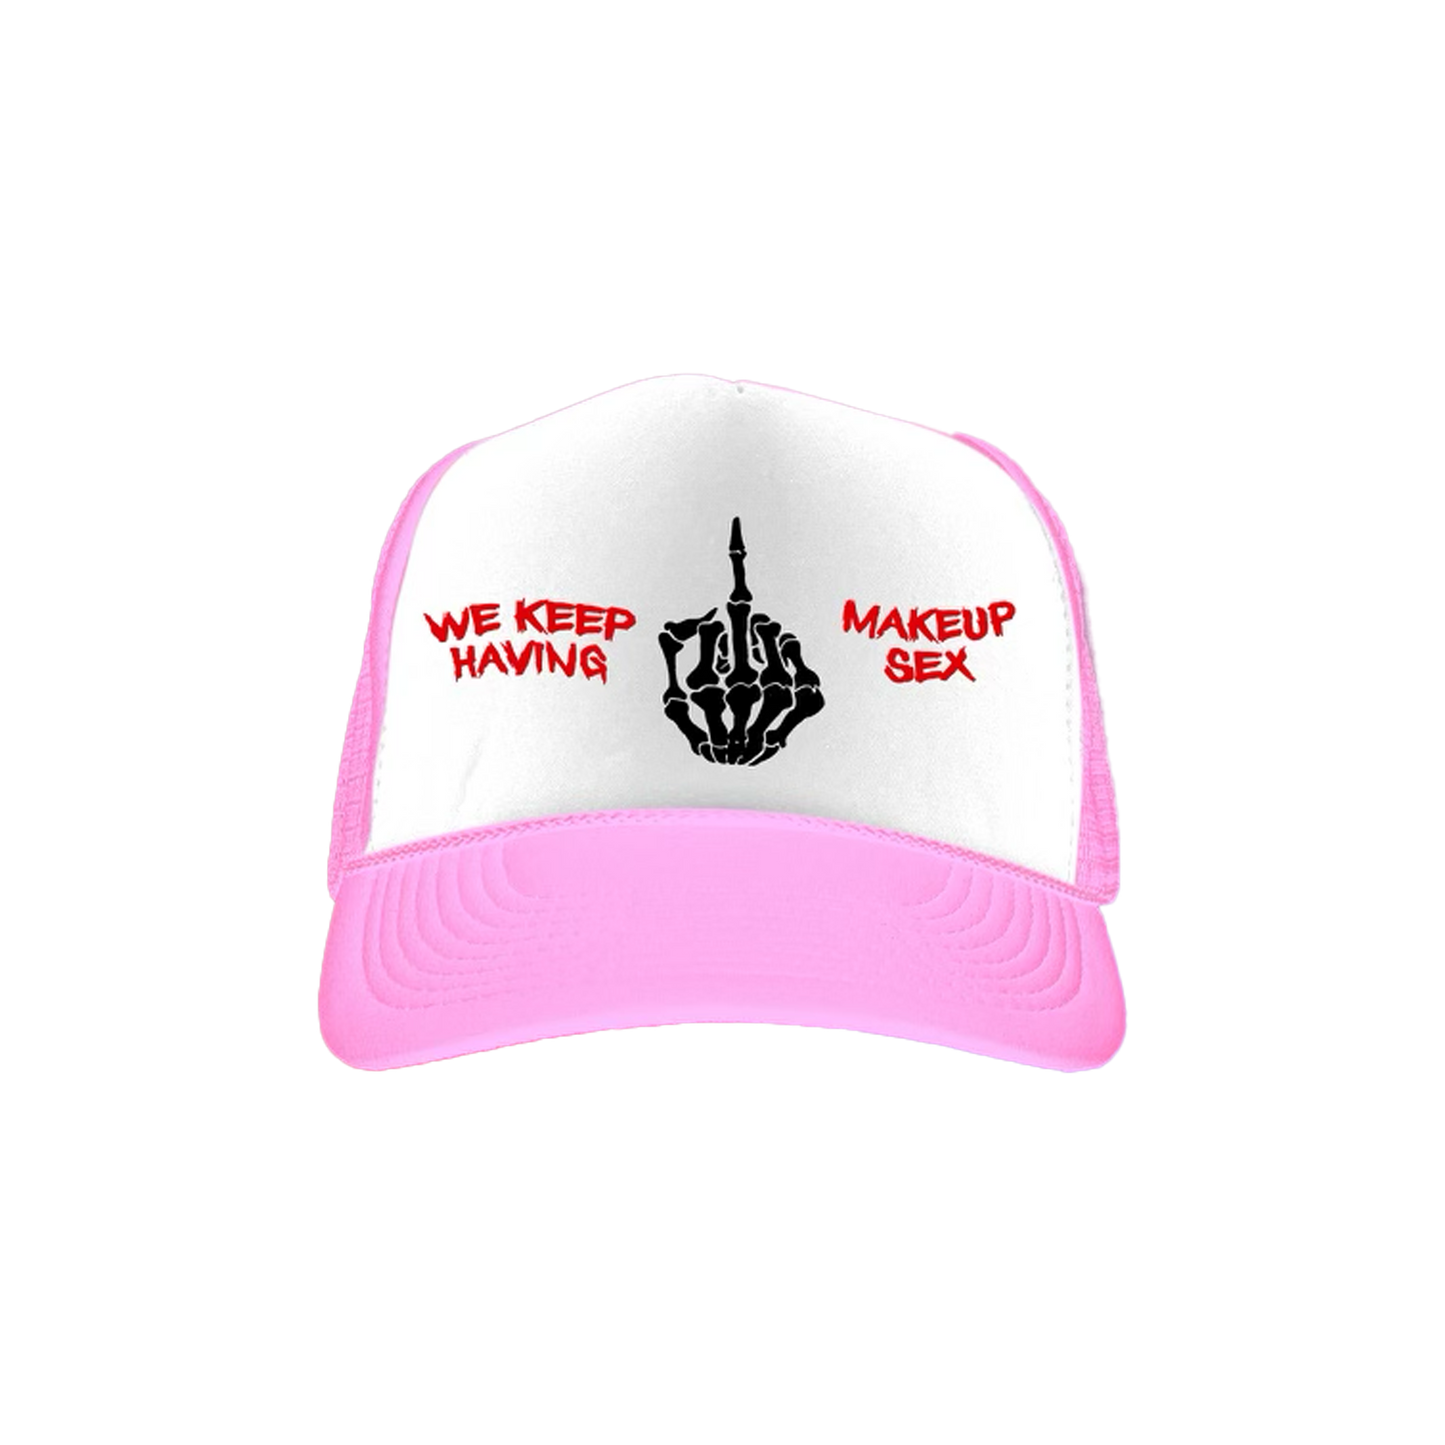 "Breakup sex, Makeup Sex" Trucker Hat